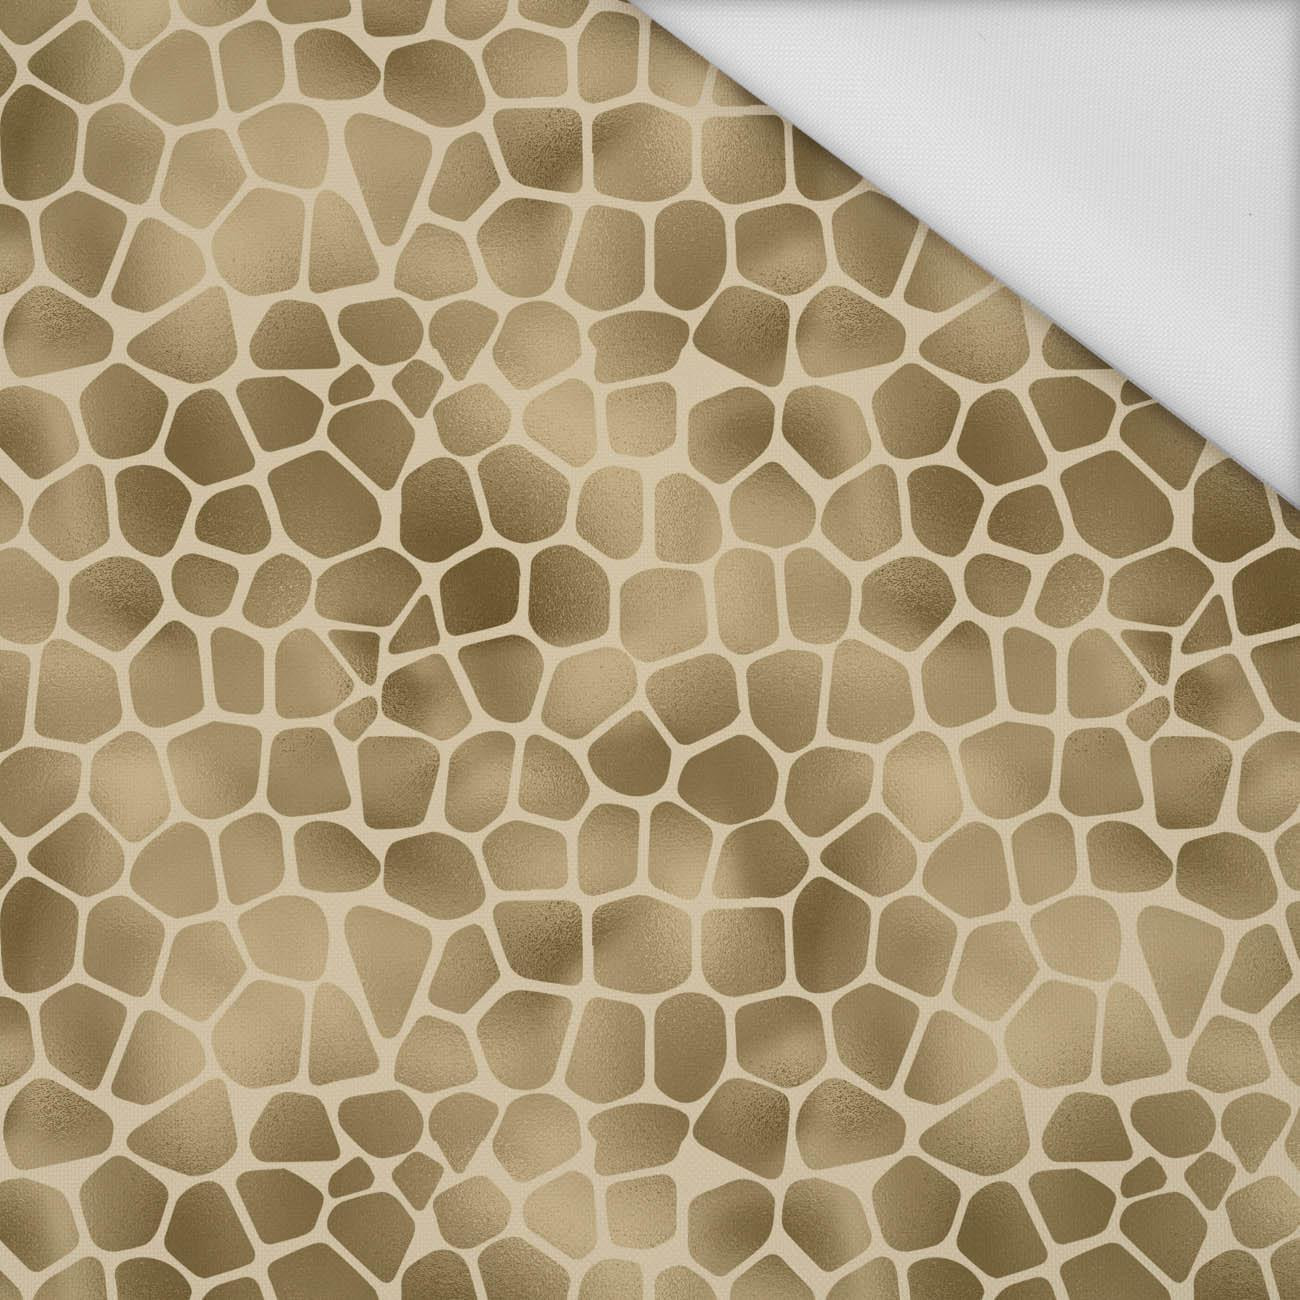 GIRAFFE PAT. 2 (SAFARI) - Waterproof woven fabric